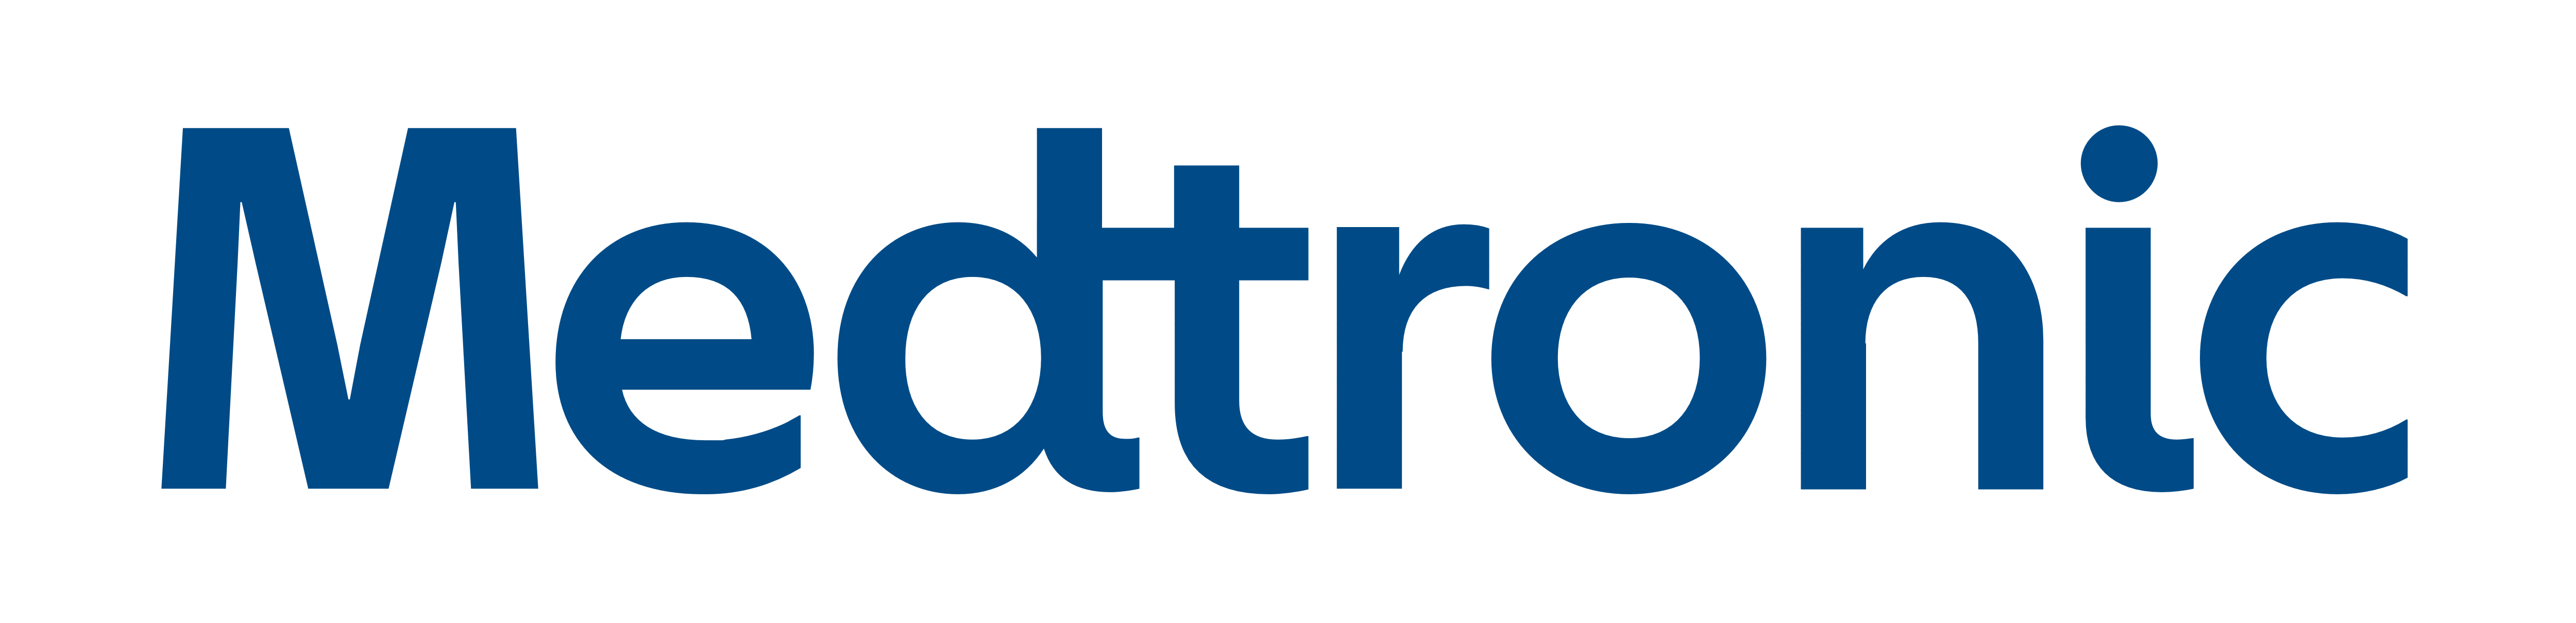 New Medtronic Logo - Customer Spotlight